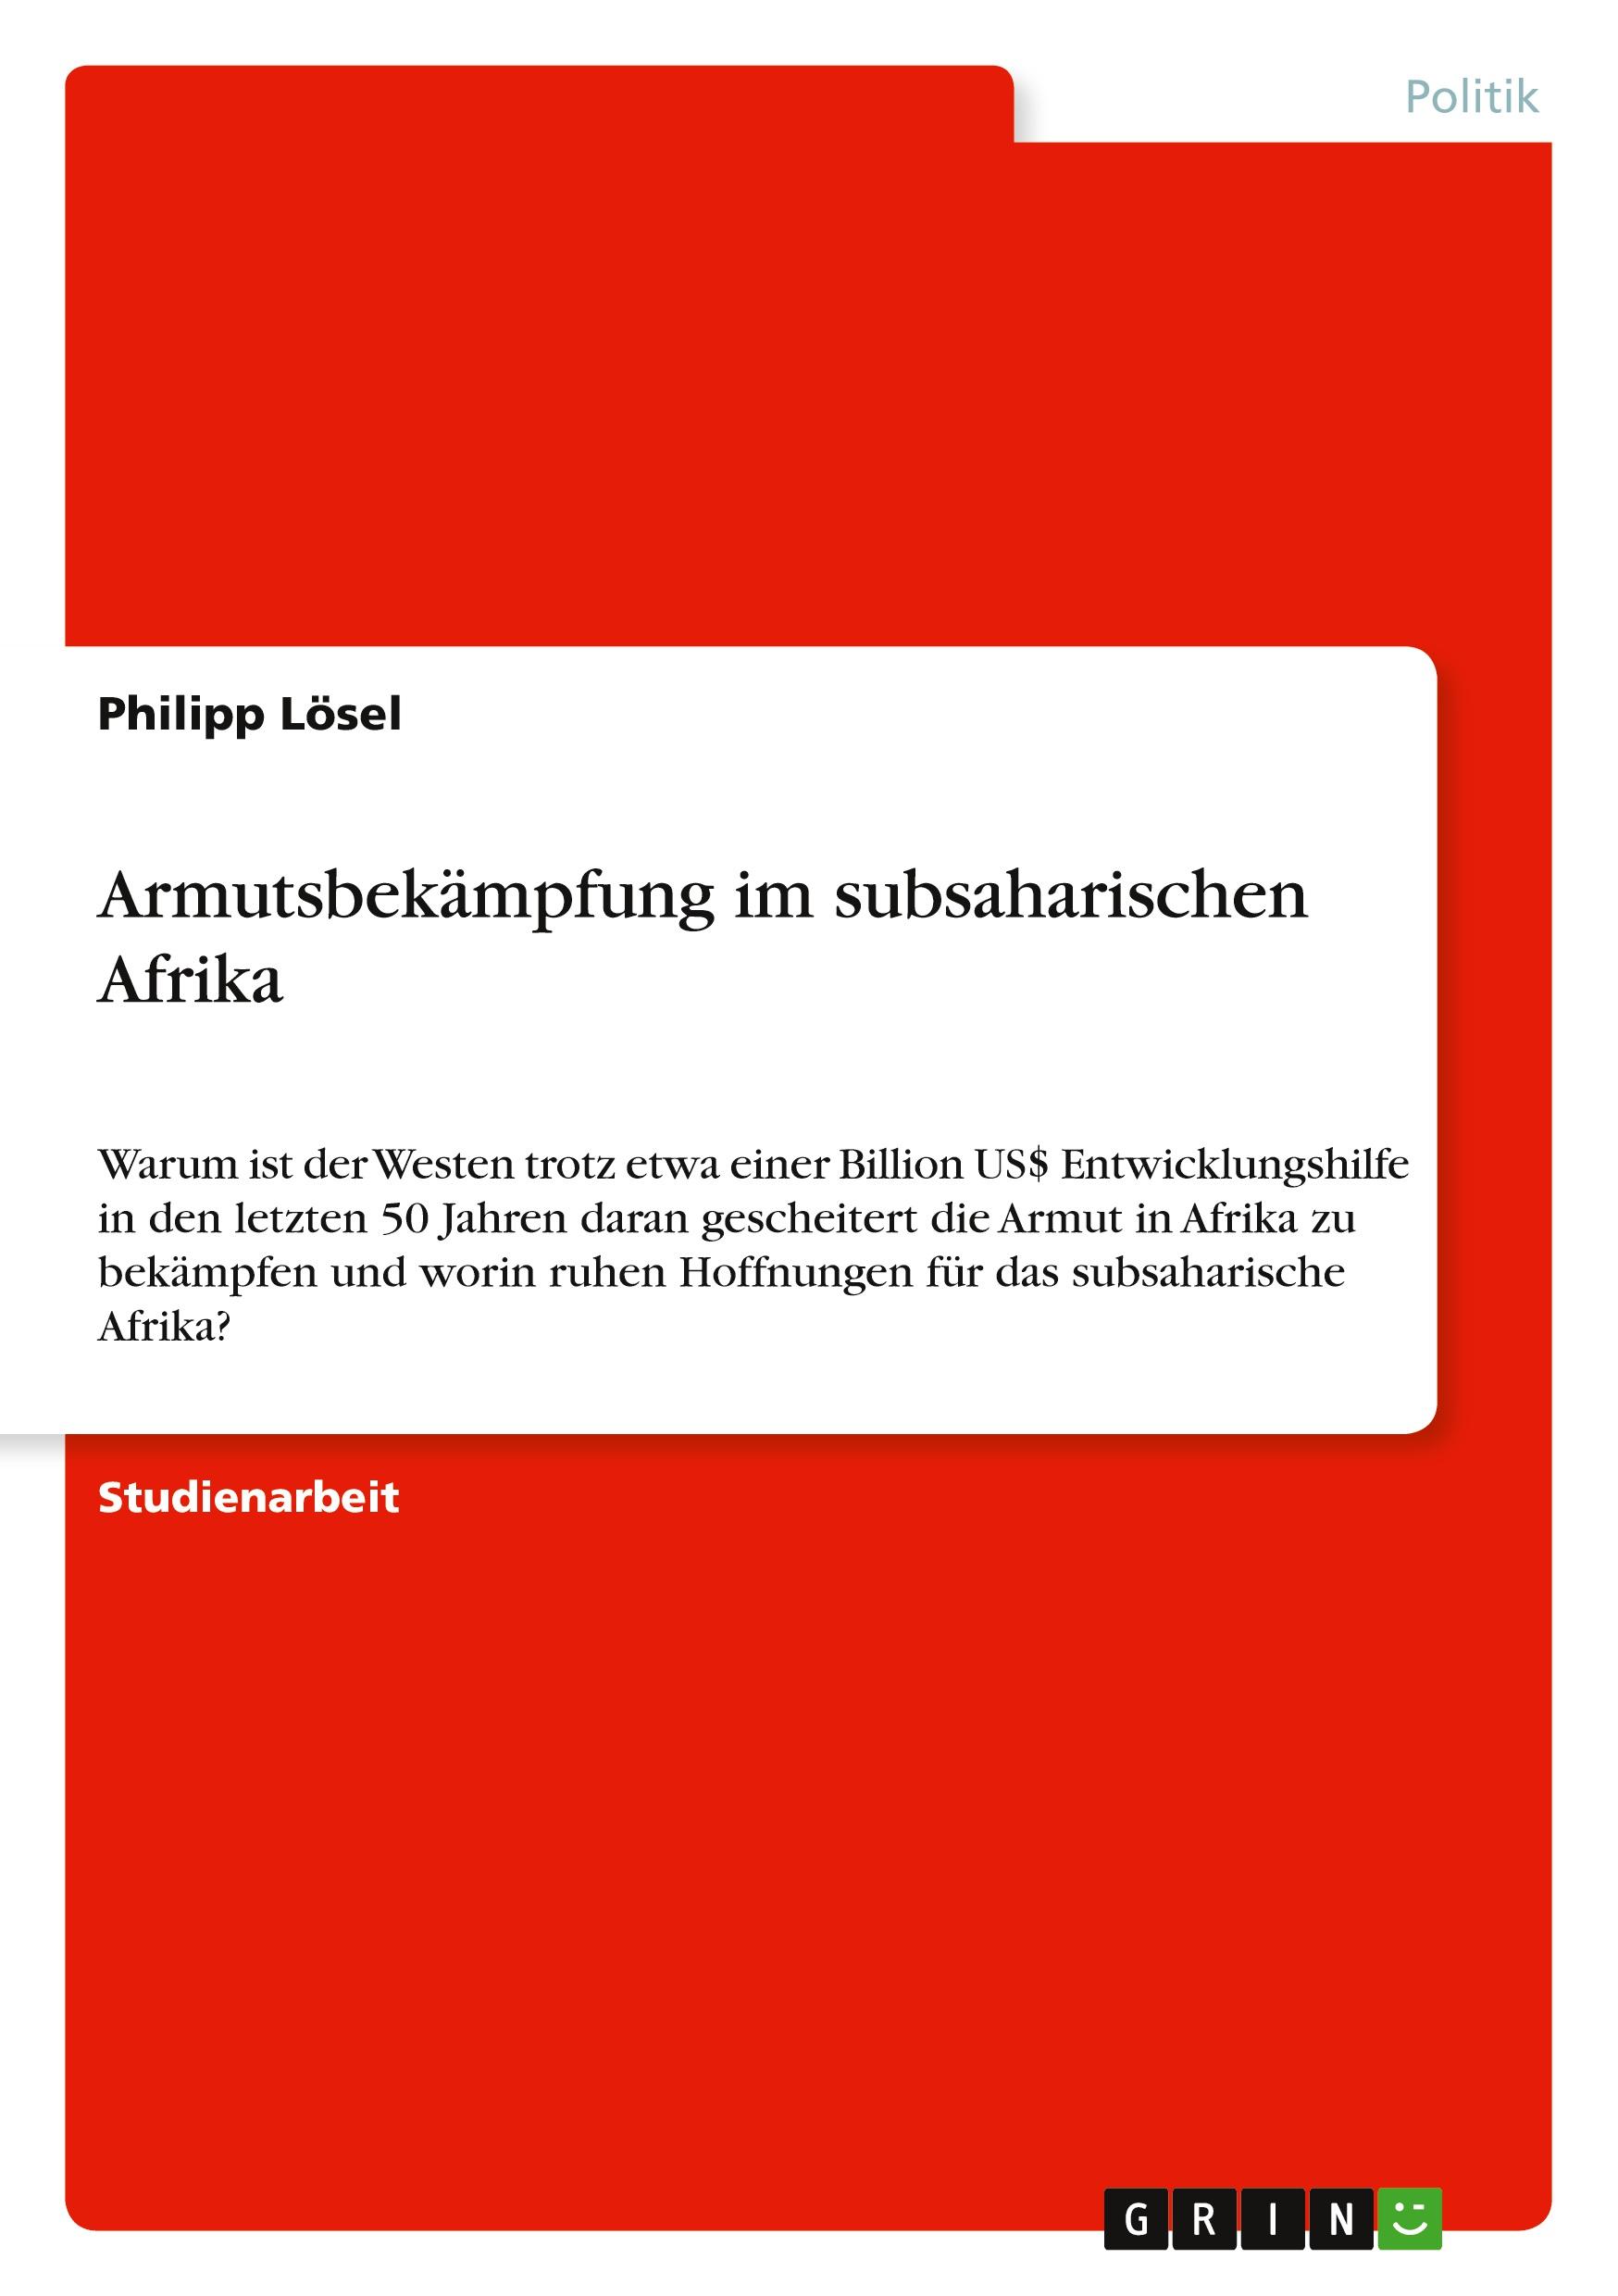 Armutsbekämpfung im subsaharischen Afrika / Philipp Lösel / Taschenbuch / Paperback / Deutsch / 2010 / GRIN Verlag / EAN 9783640779673 - Lösel, Philipp